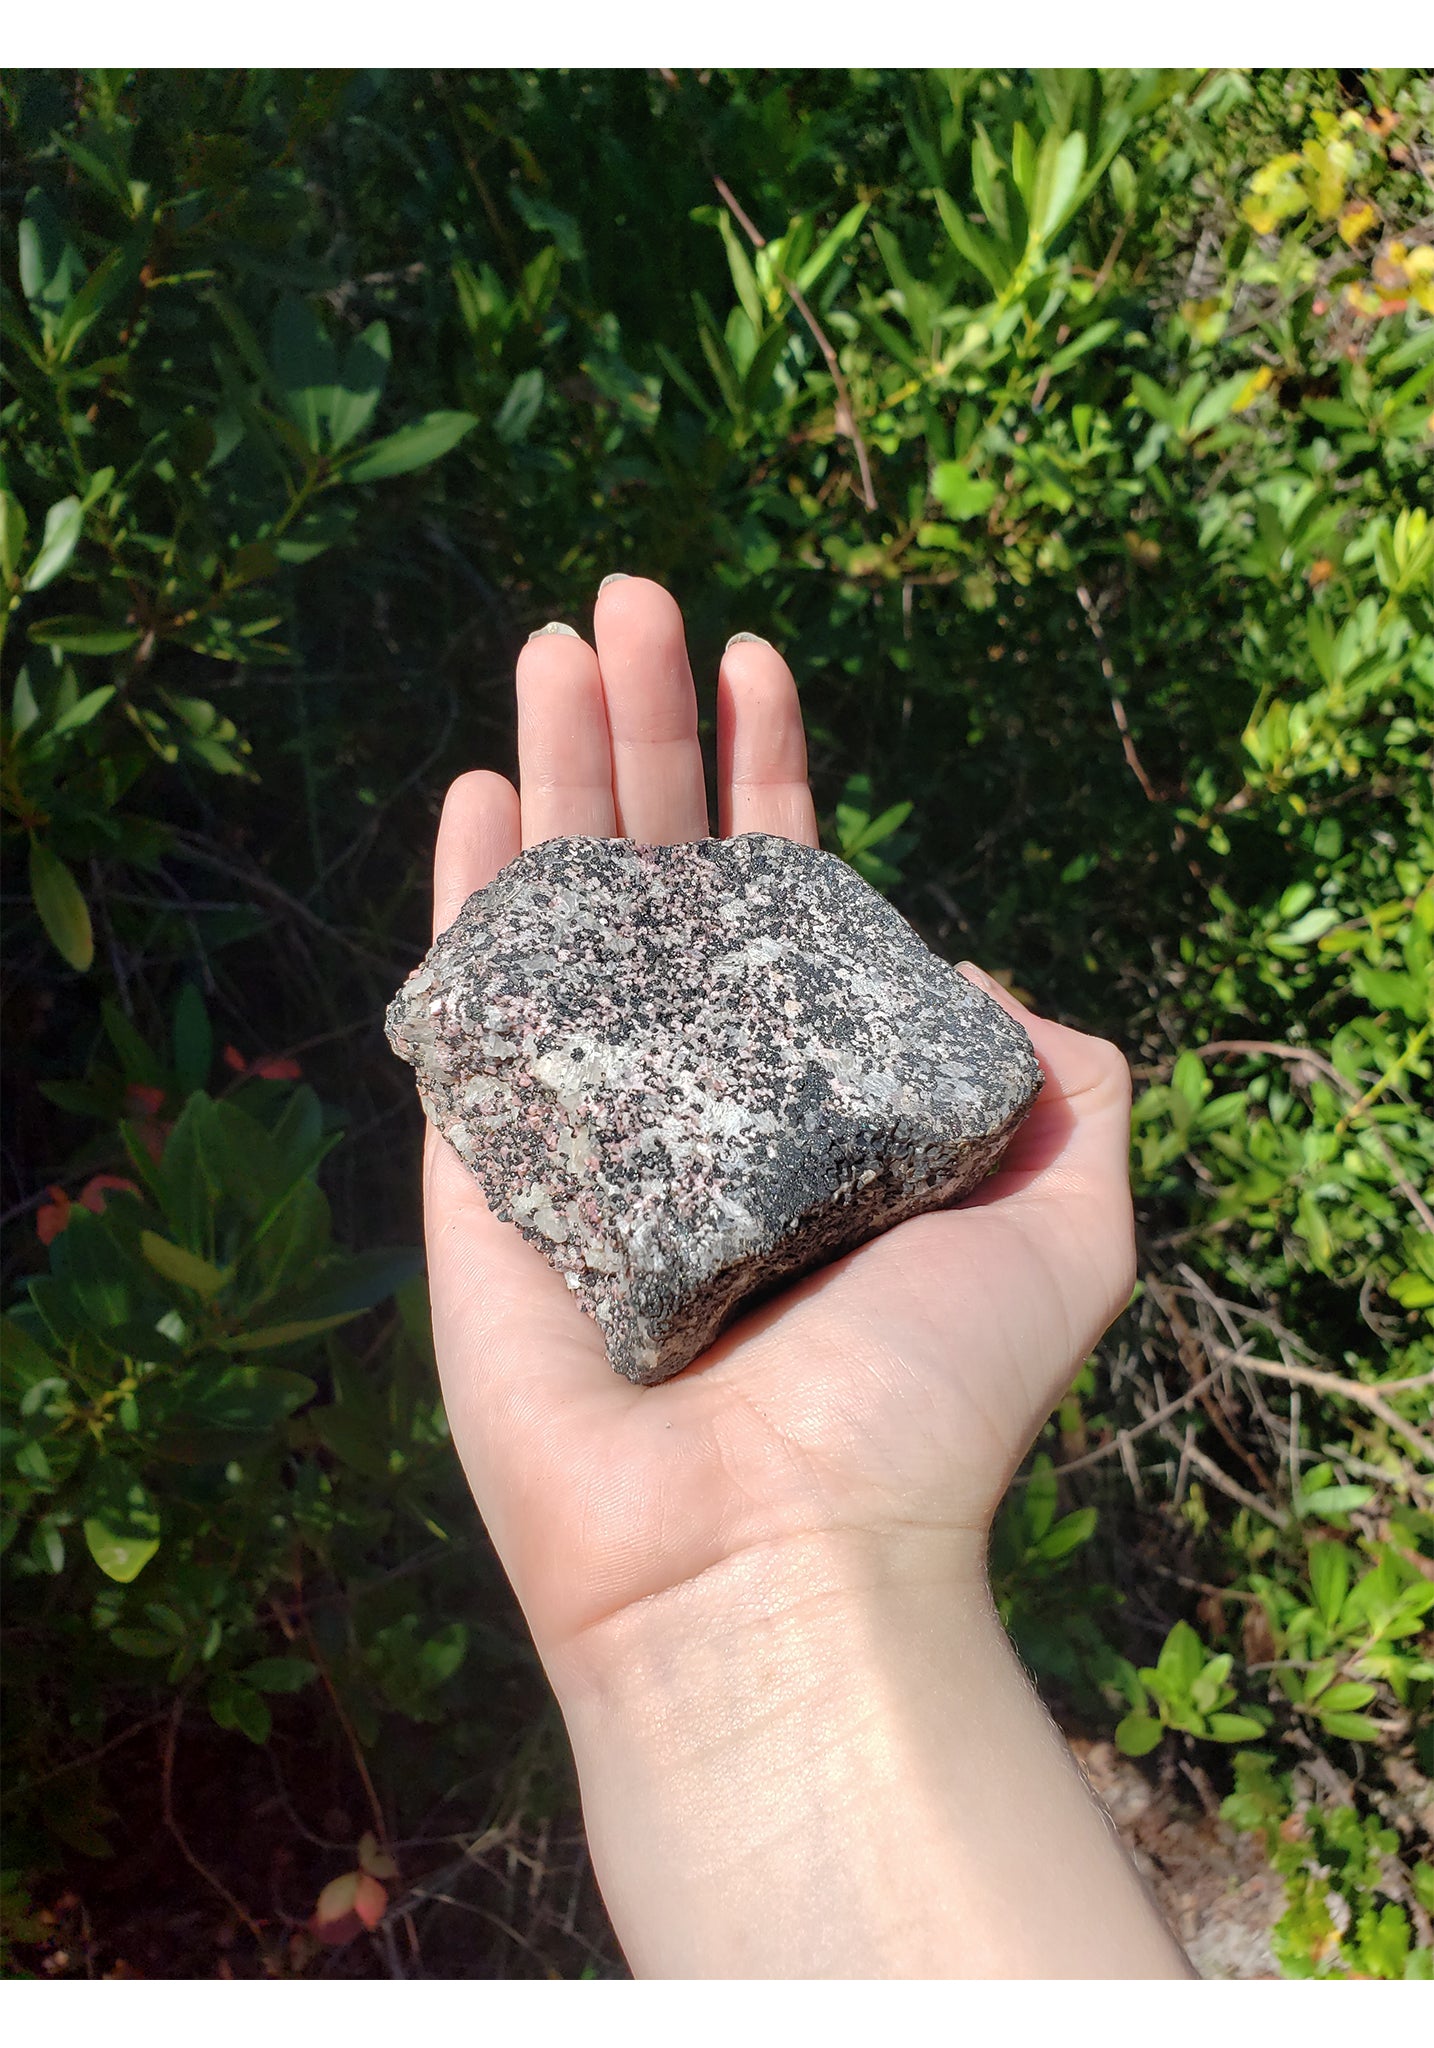 Franklin Willemite in Calcite Matrix Natural Gemstone Slab 2